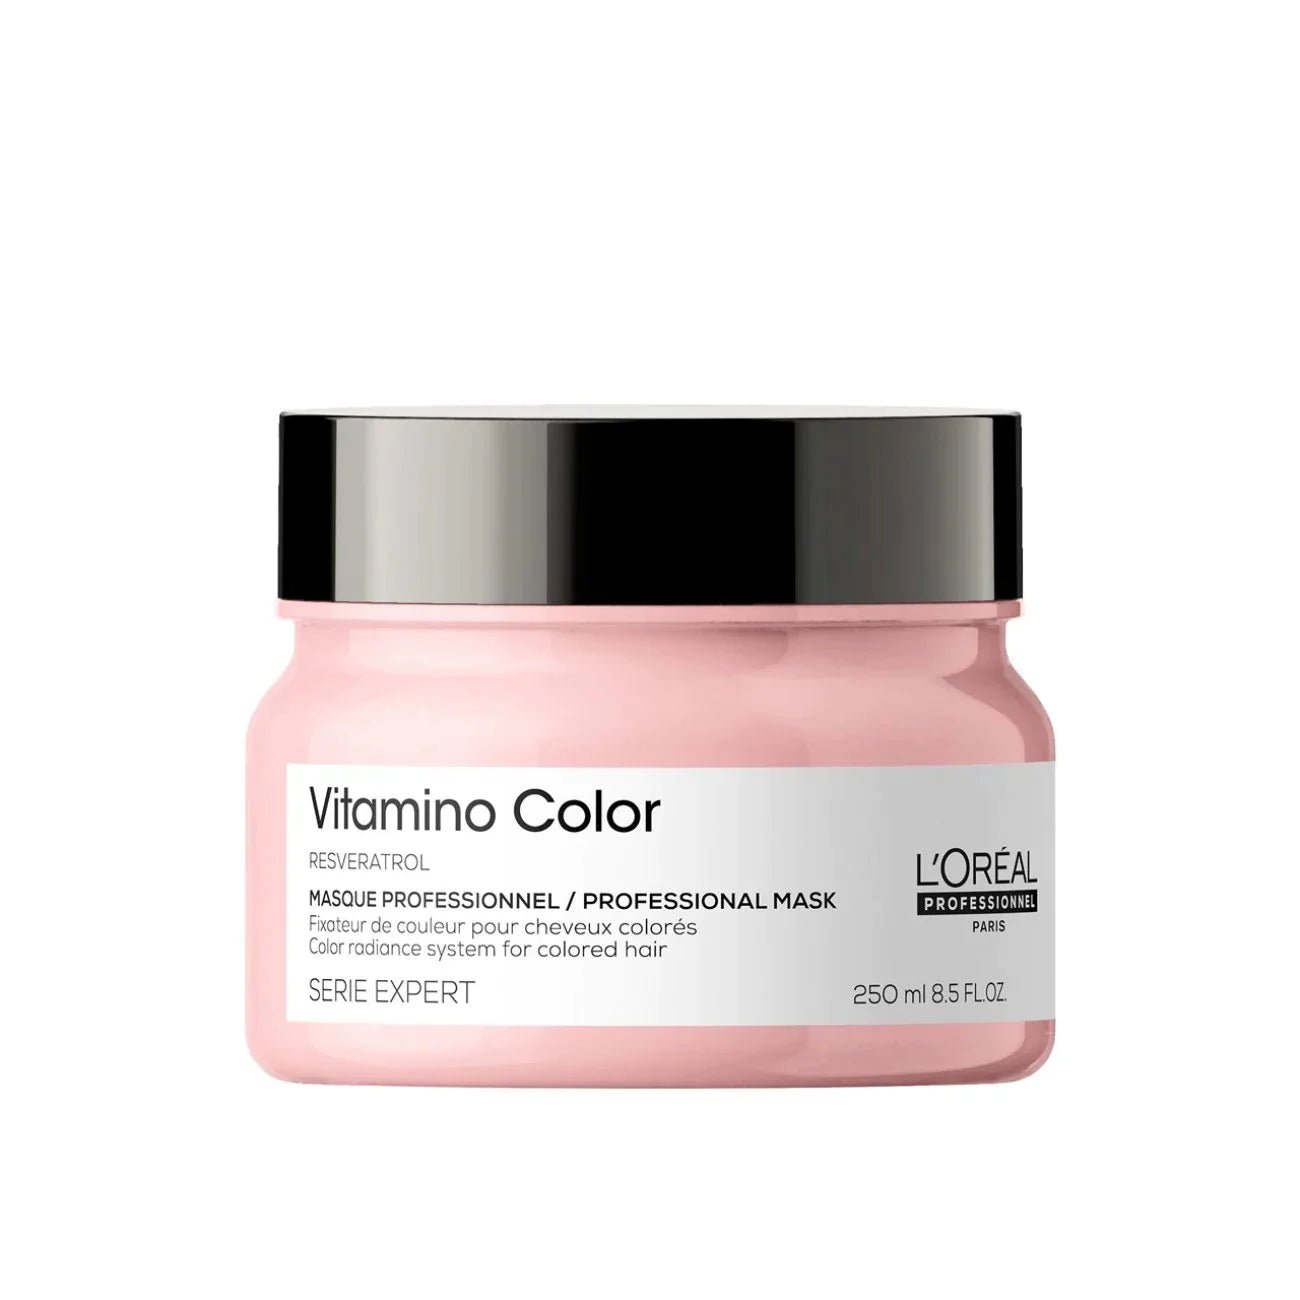 Loreal Professional Vitamino Color Hair Mask 250ML - AllurebeautypkLoreal Professional Vitamino Color Hair Mask 250ML